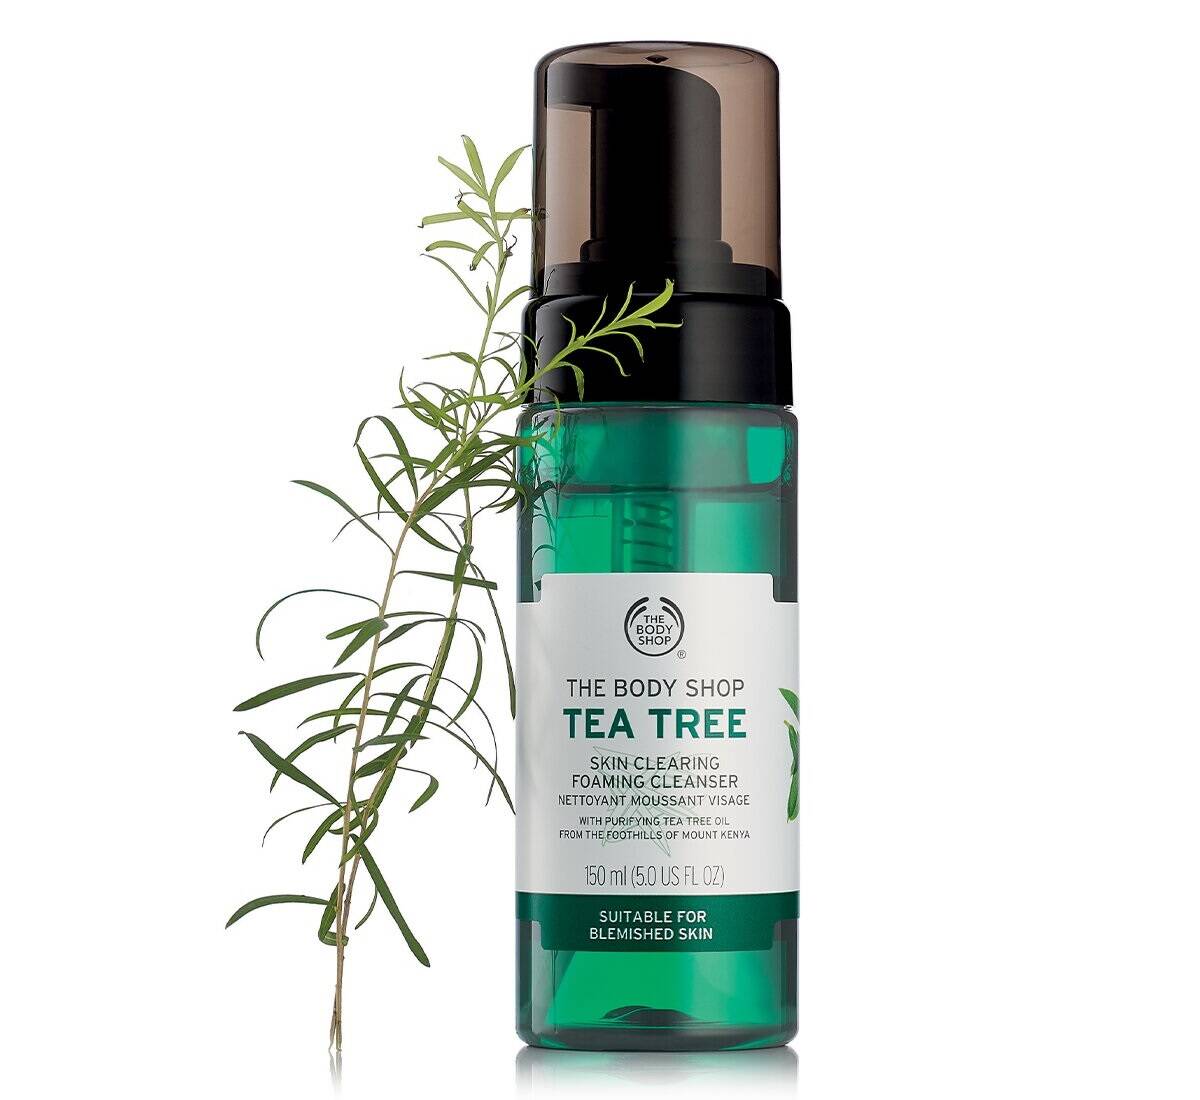 فوم شستشو تی تری بادی شاپ (درخت چای) برای پوست چرب و جوش دار (The Body Shop Tea Tree Foaming Cleanser )